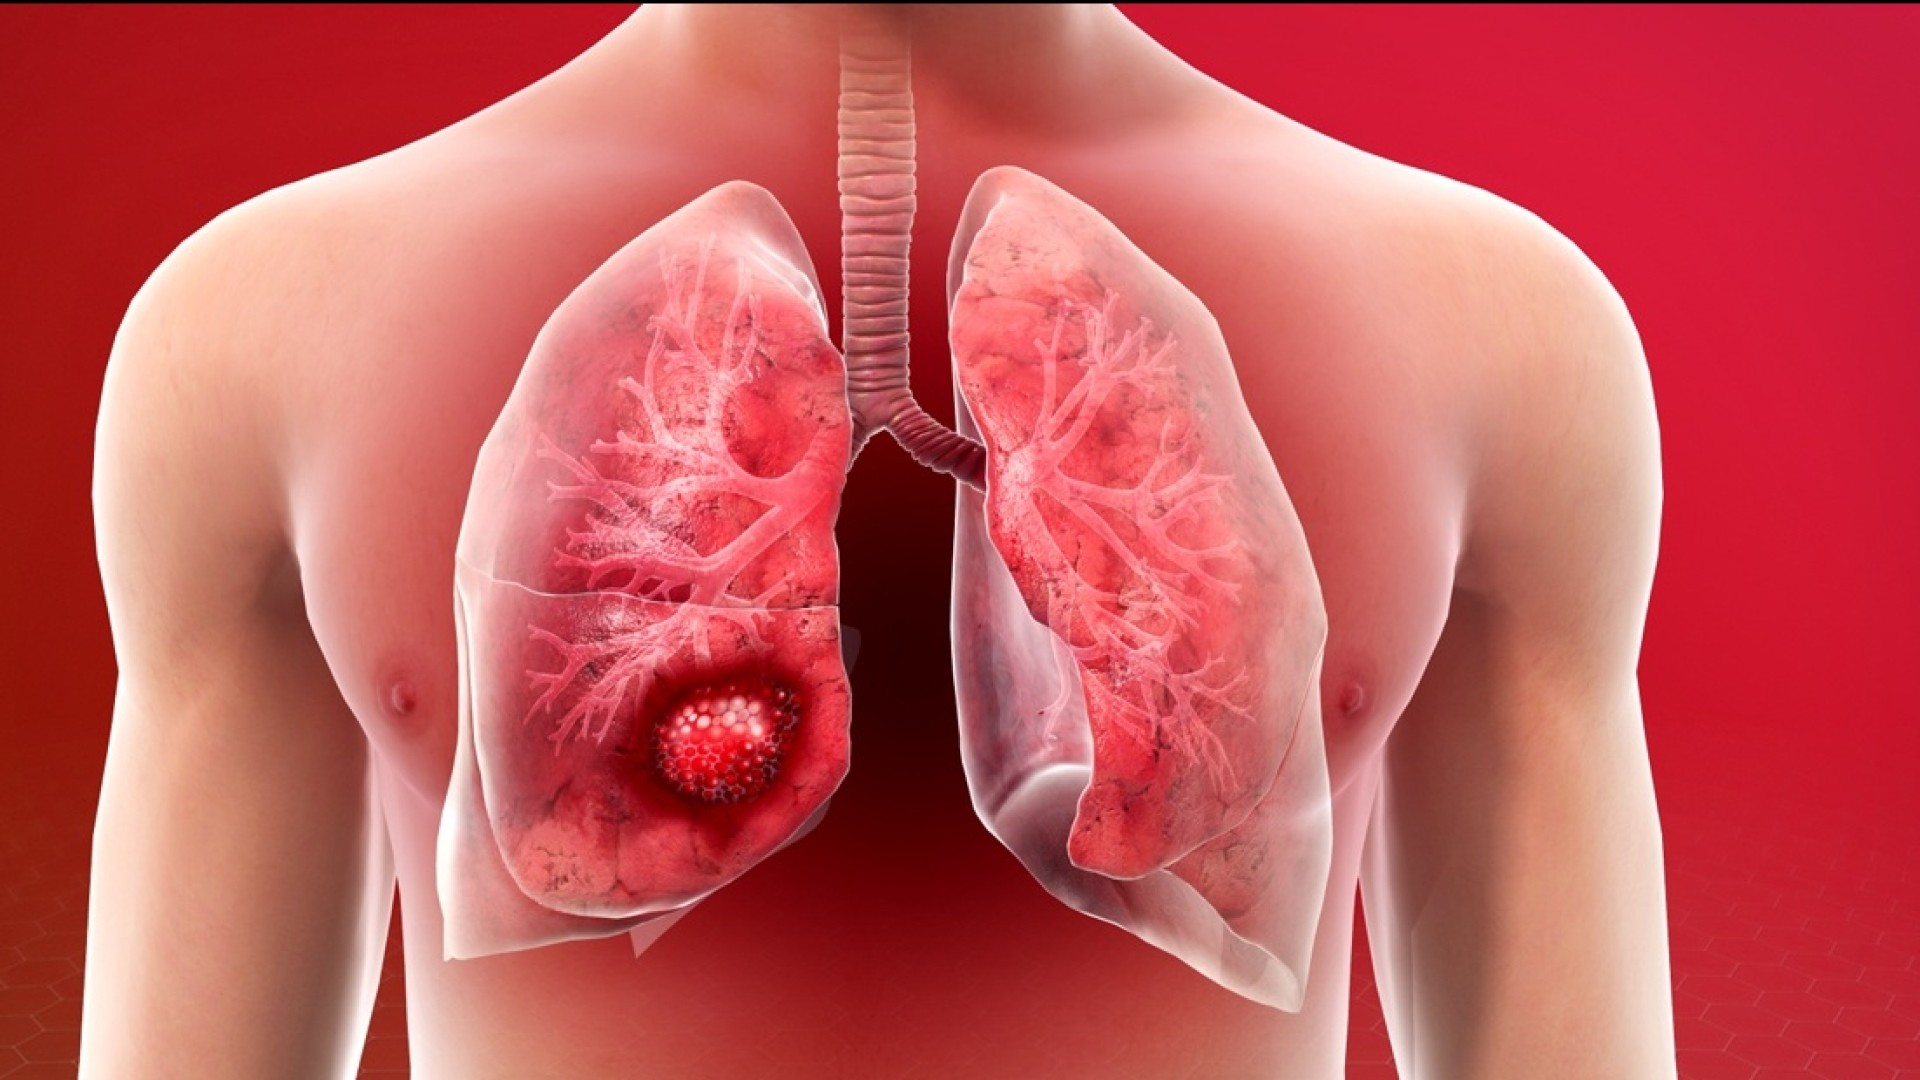 Ανεγχείρητος καρκίνος πνεύμονος:  O ειδικός μας εξηγεί τι είναι και ποια είναι η θεραπευτική προσέγγισή του